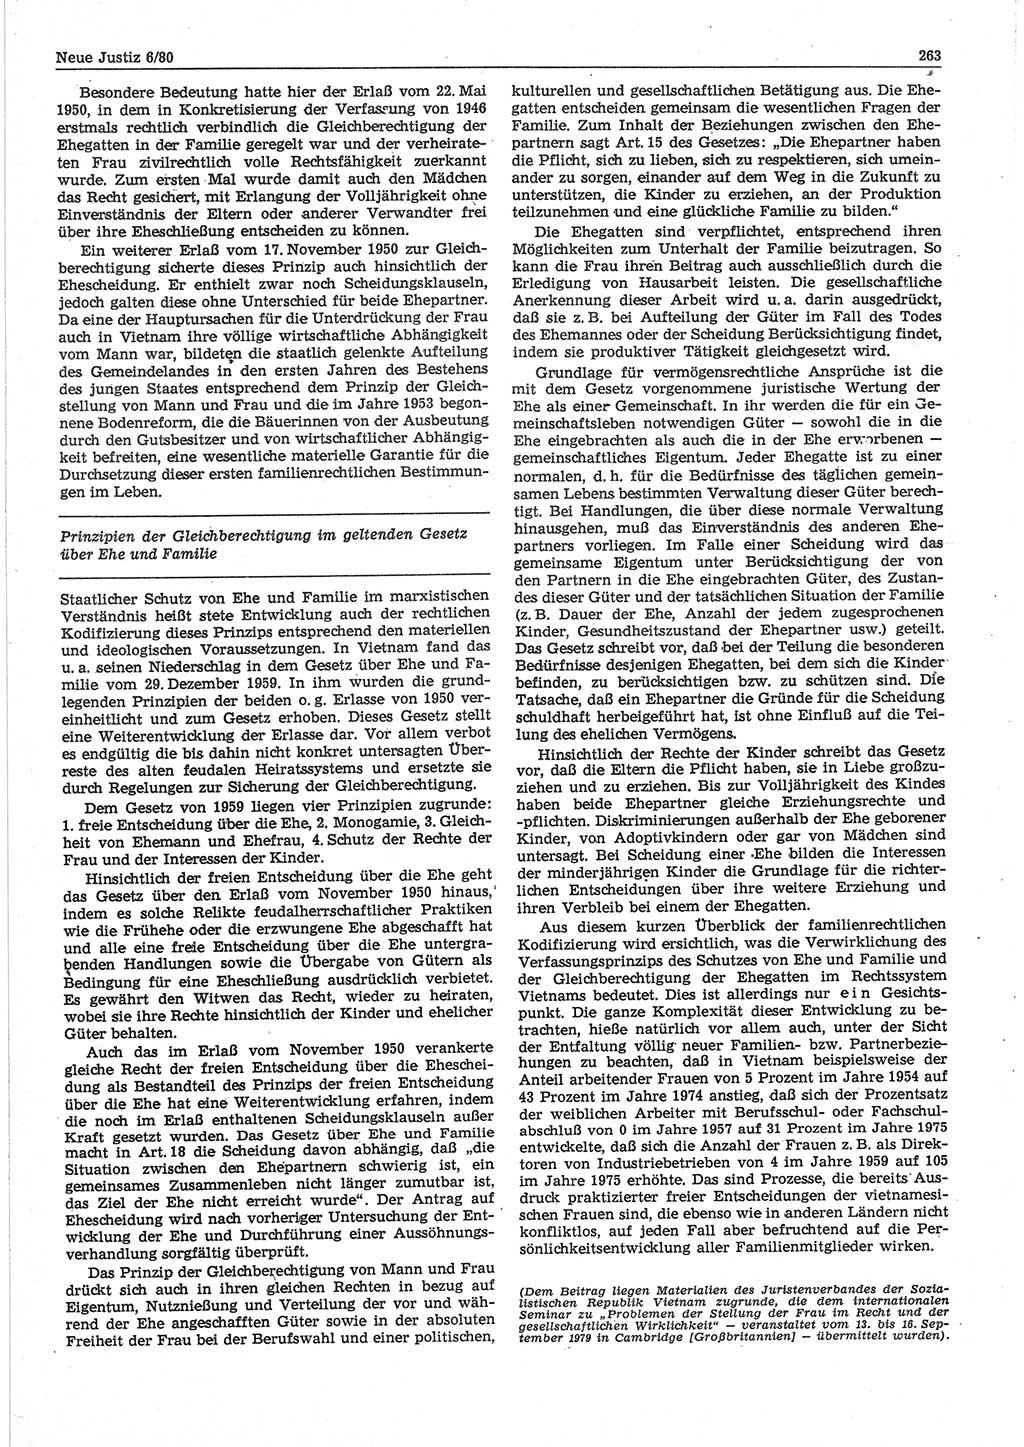 Neue Justiz (NJ), Zeitschrift für sozialistisches Recht und Gesetzlichkeit [Deutsche Demokratische Republik (DDR)], 34. Jahrgang 1980, Seite 263 (NJ DDR 1980, S. 263)